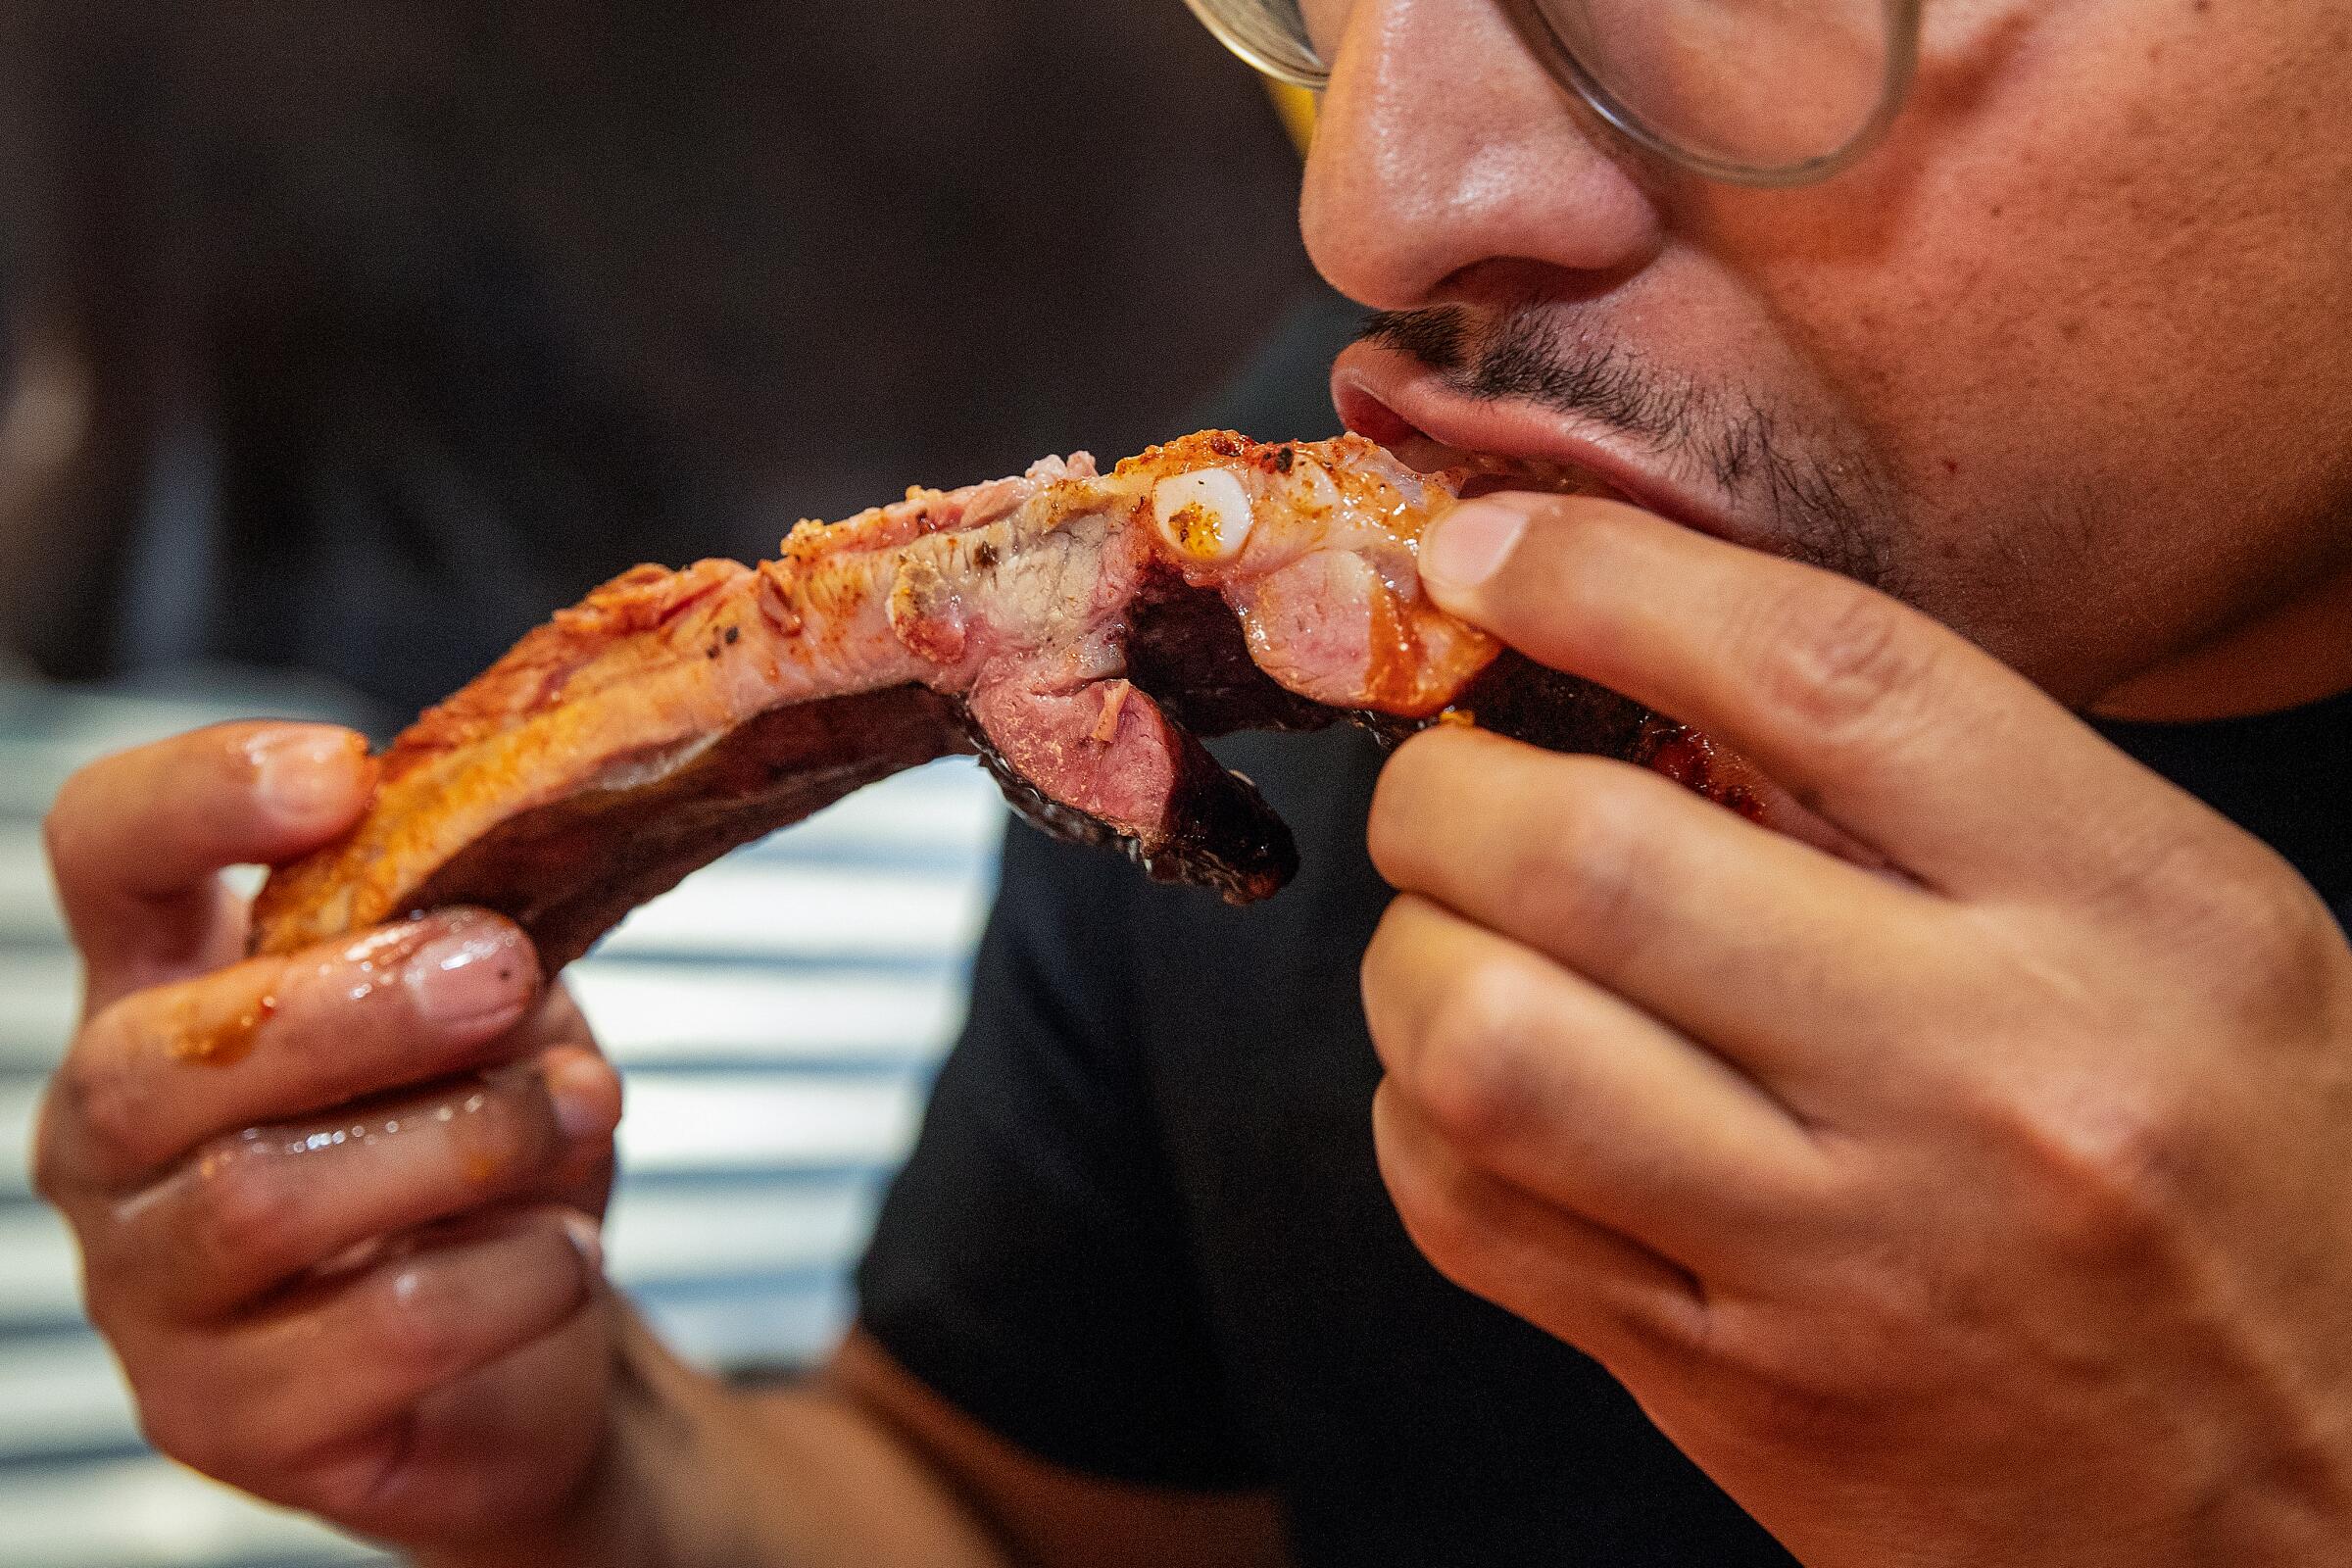 A person bites into a barbecued pork rib